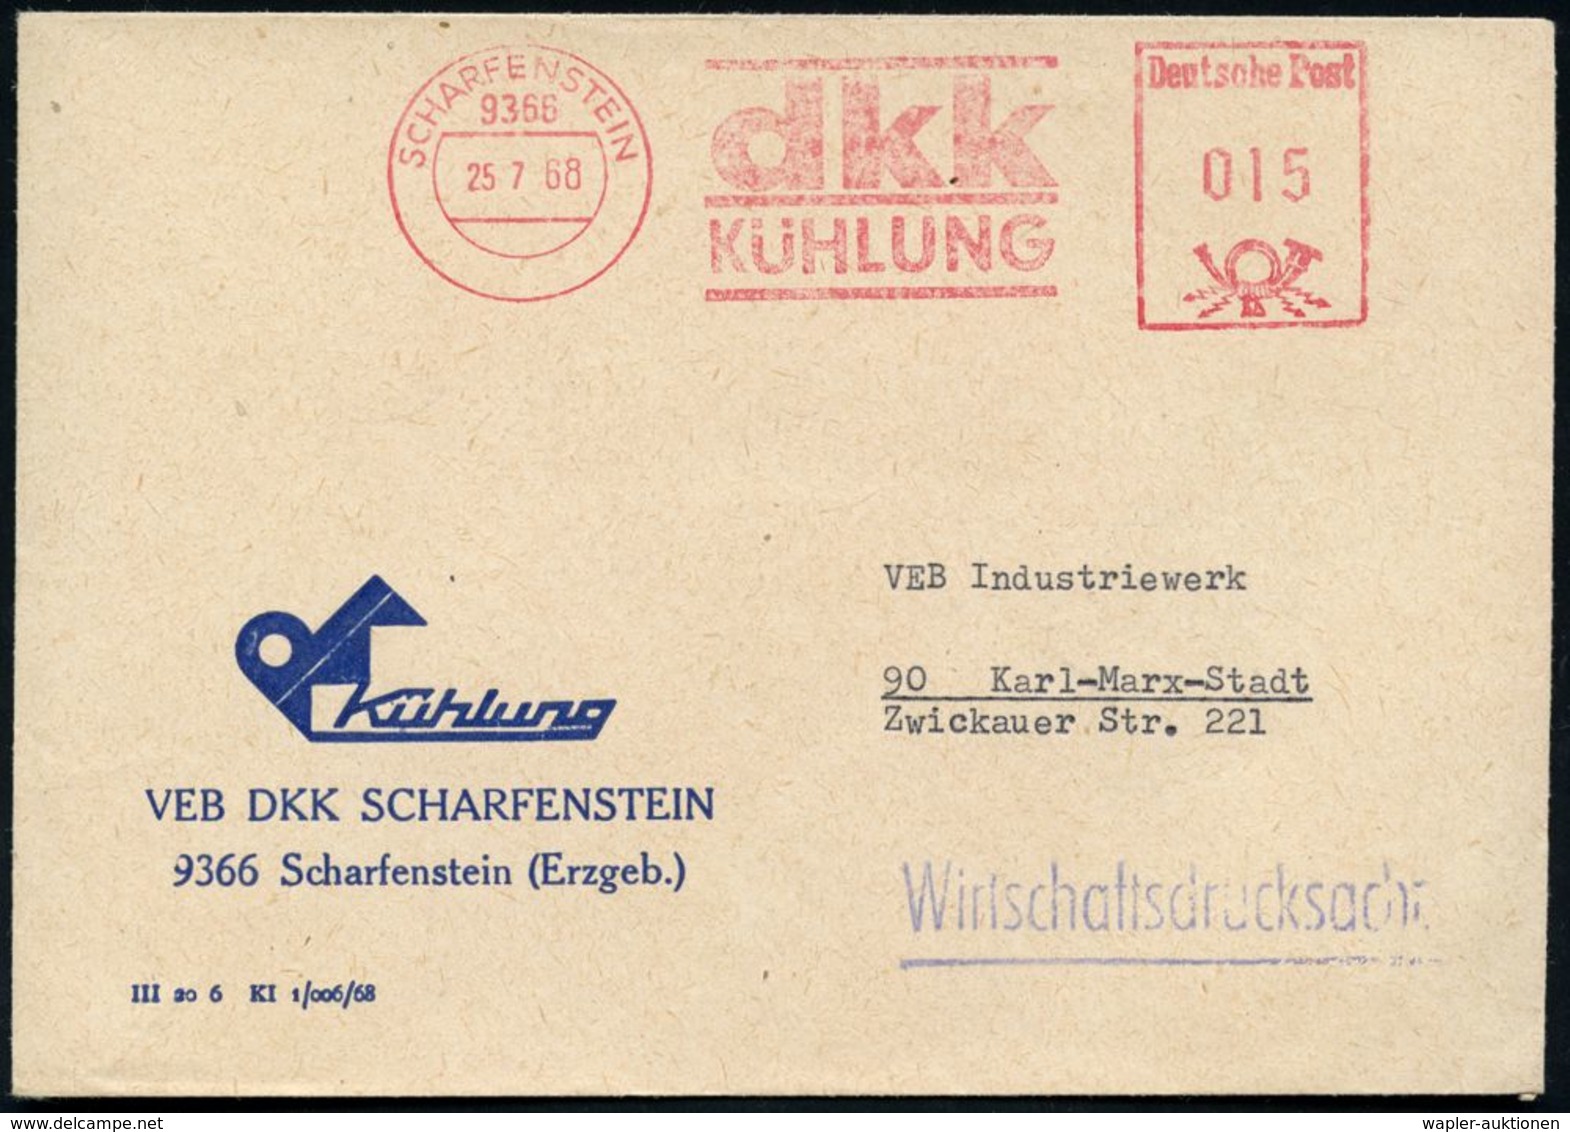 9366 SCHARFENSTEIN/ Dkk/ KÜHLUNG 1968 AFS Klar Auf Firmen-Bf.: VEB DKK SCHARFENSTEIN (Firmen-Logo), = Hersteller Von Küh - Non Classificati